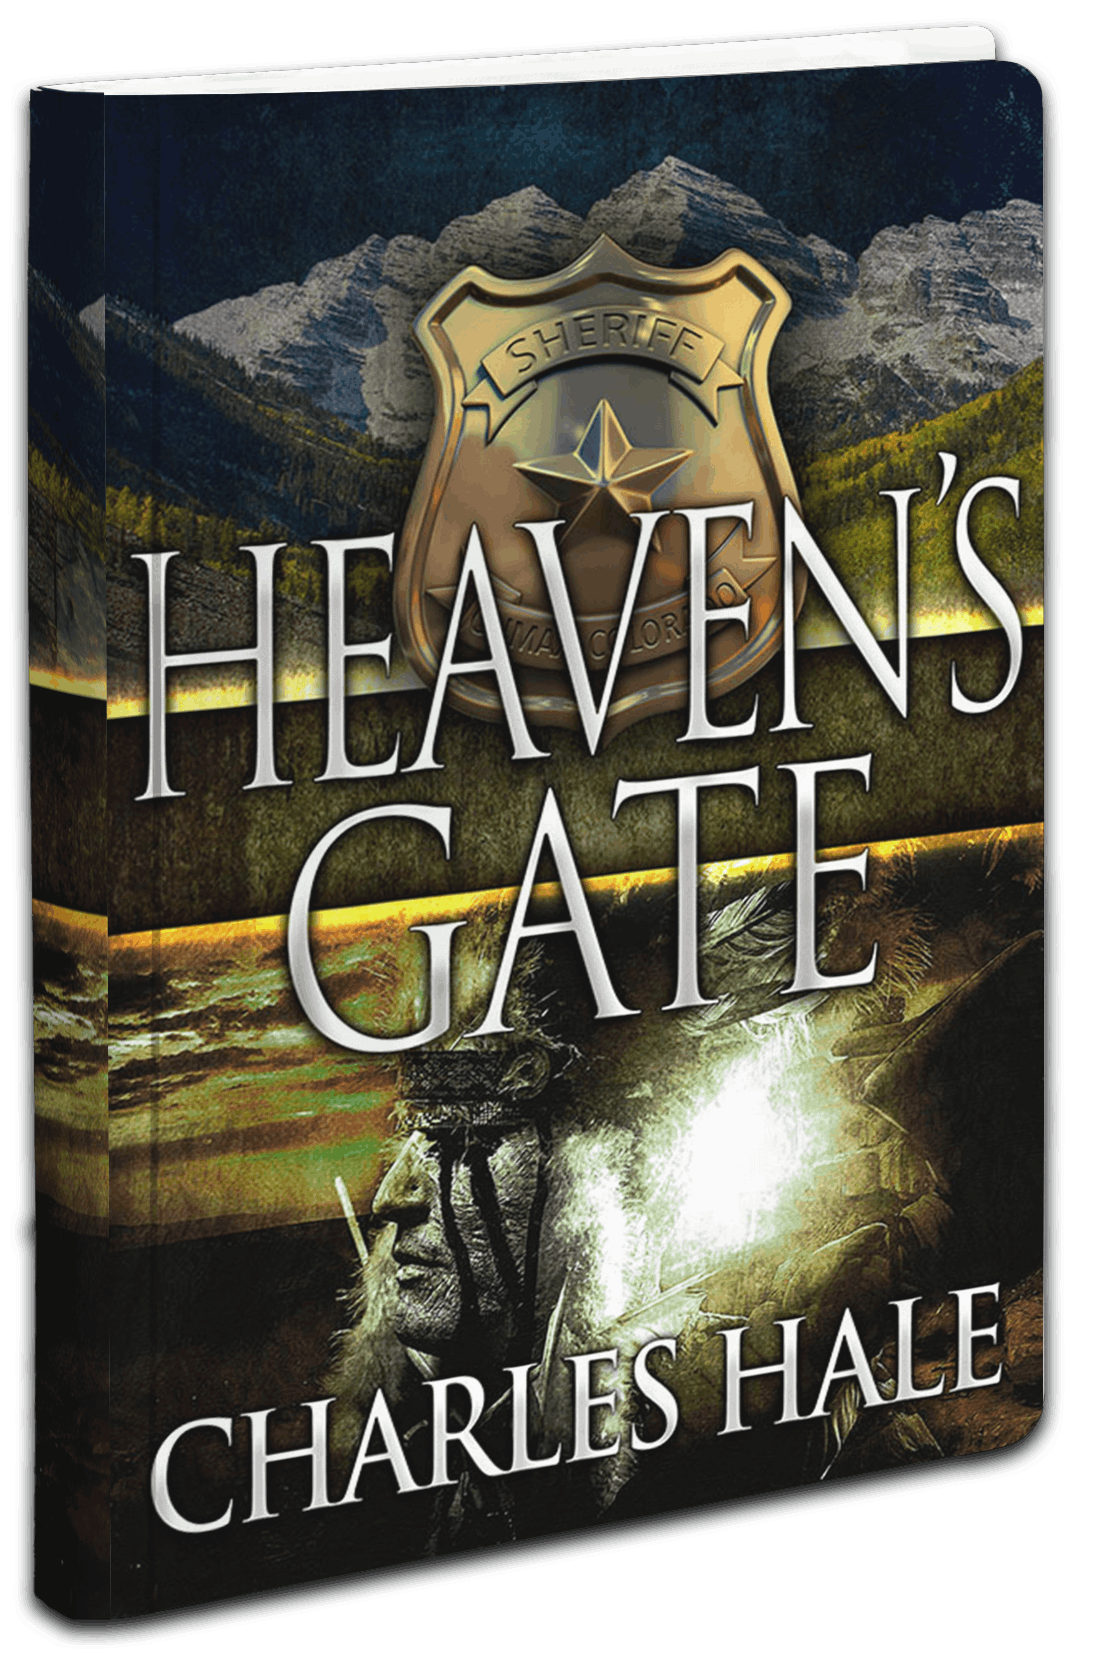 Heaven’s Gate